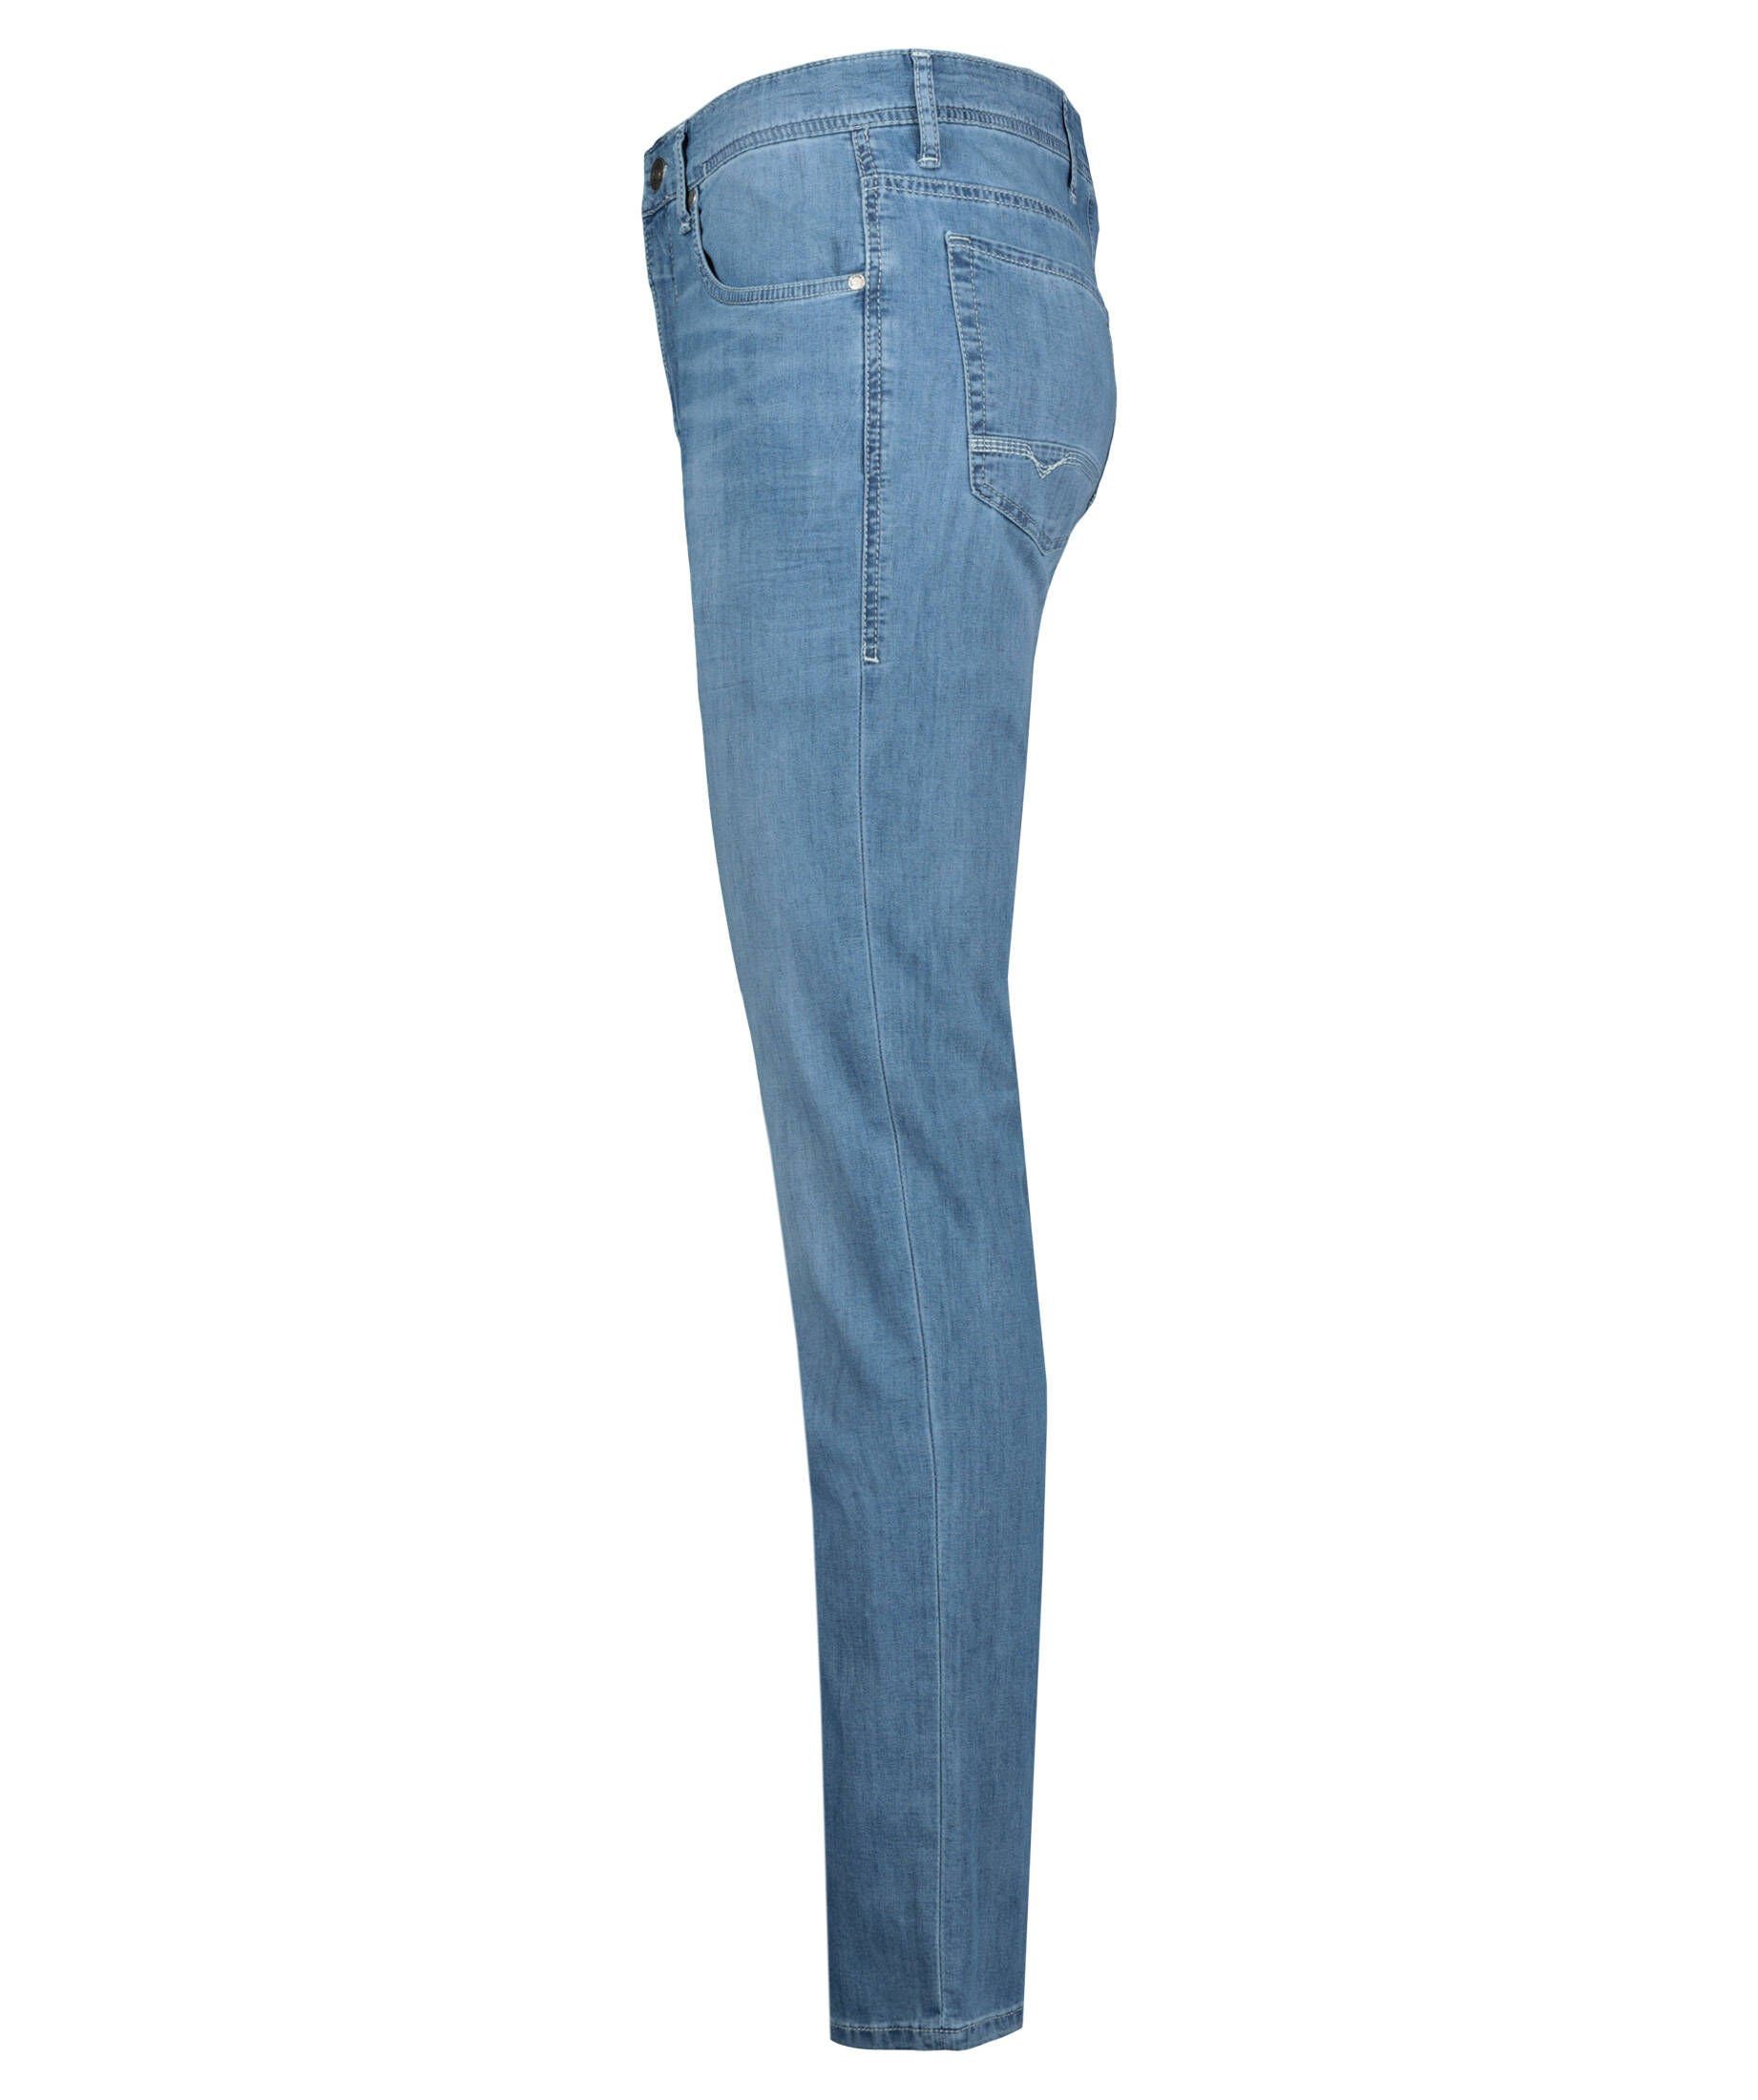 Angebot und wird mit Sicherheit ausverkauft sein! MAC 5-Pocket-Jeans Herren Jeans \